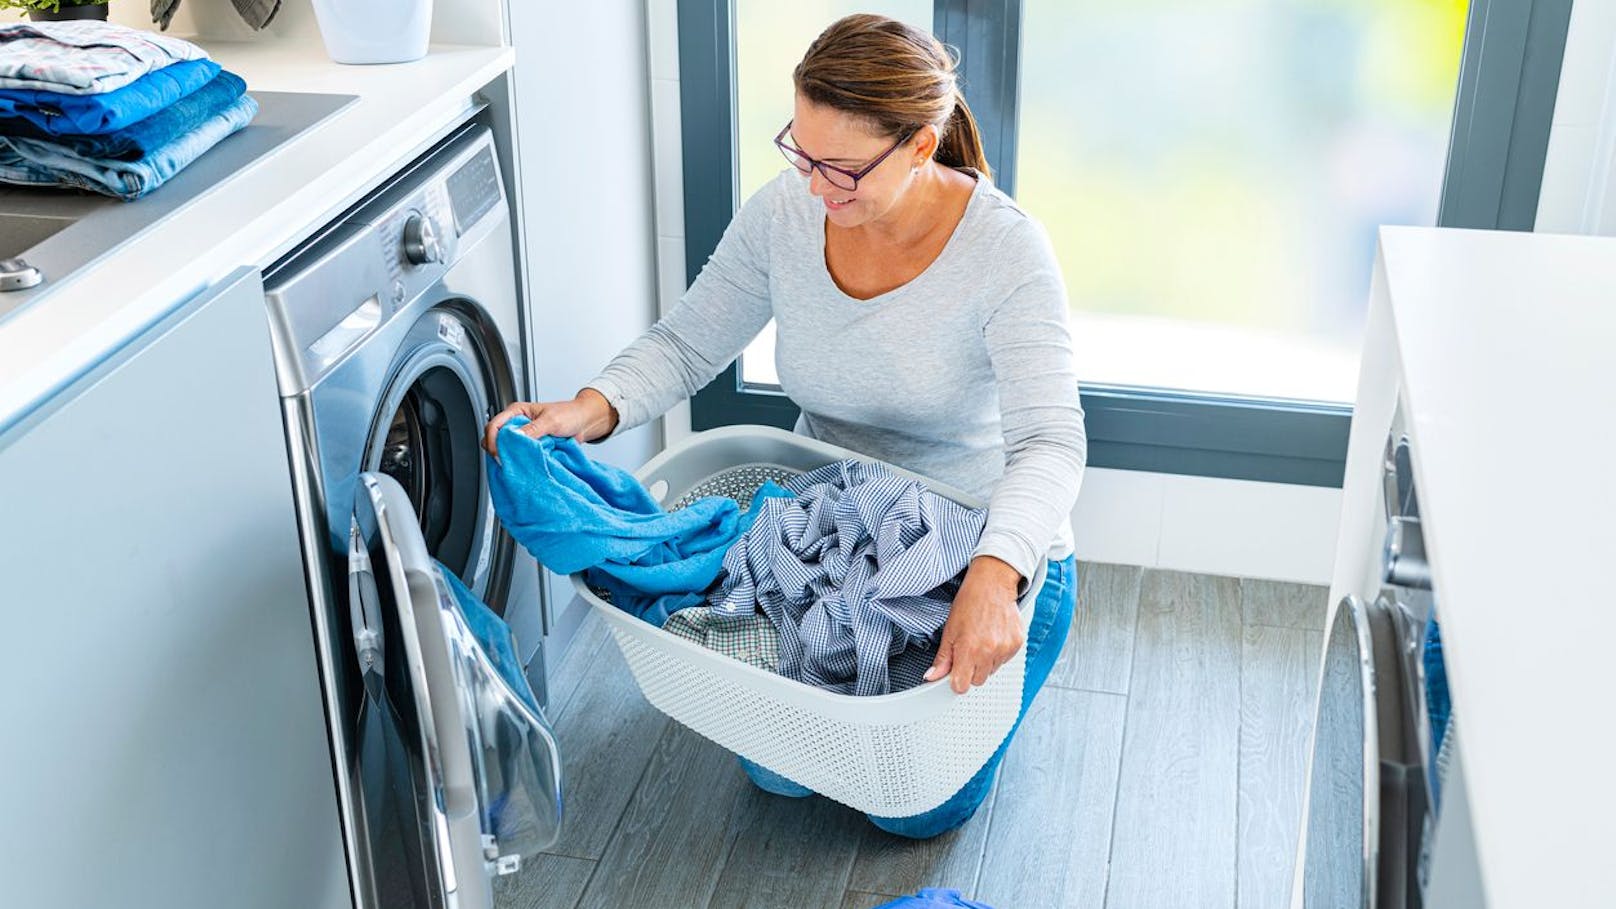 <strong>Wäsche waschen</strong> ist laut Studie schon etwas mühsamer, es kommt auf einen Intensitätswert von 2,4.